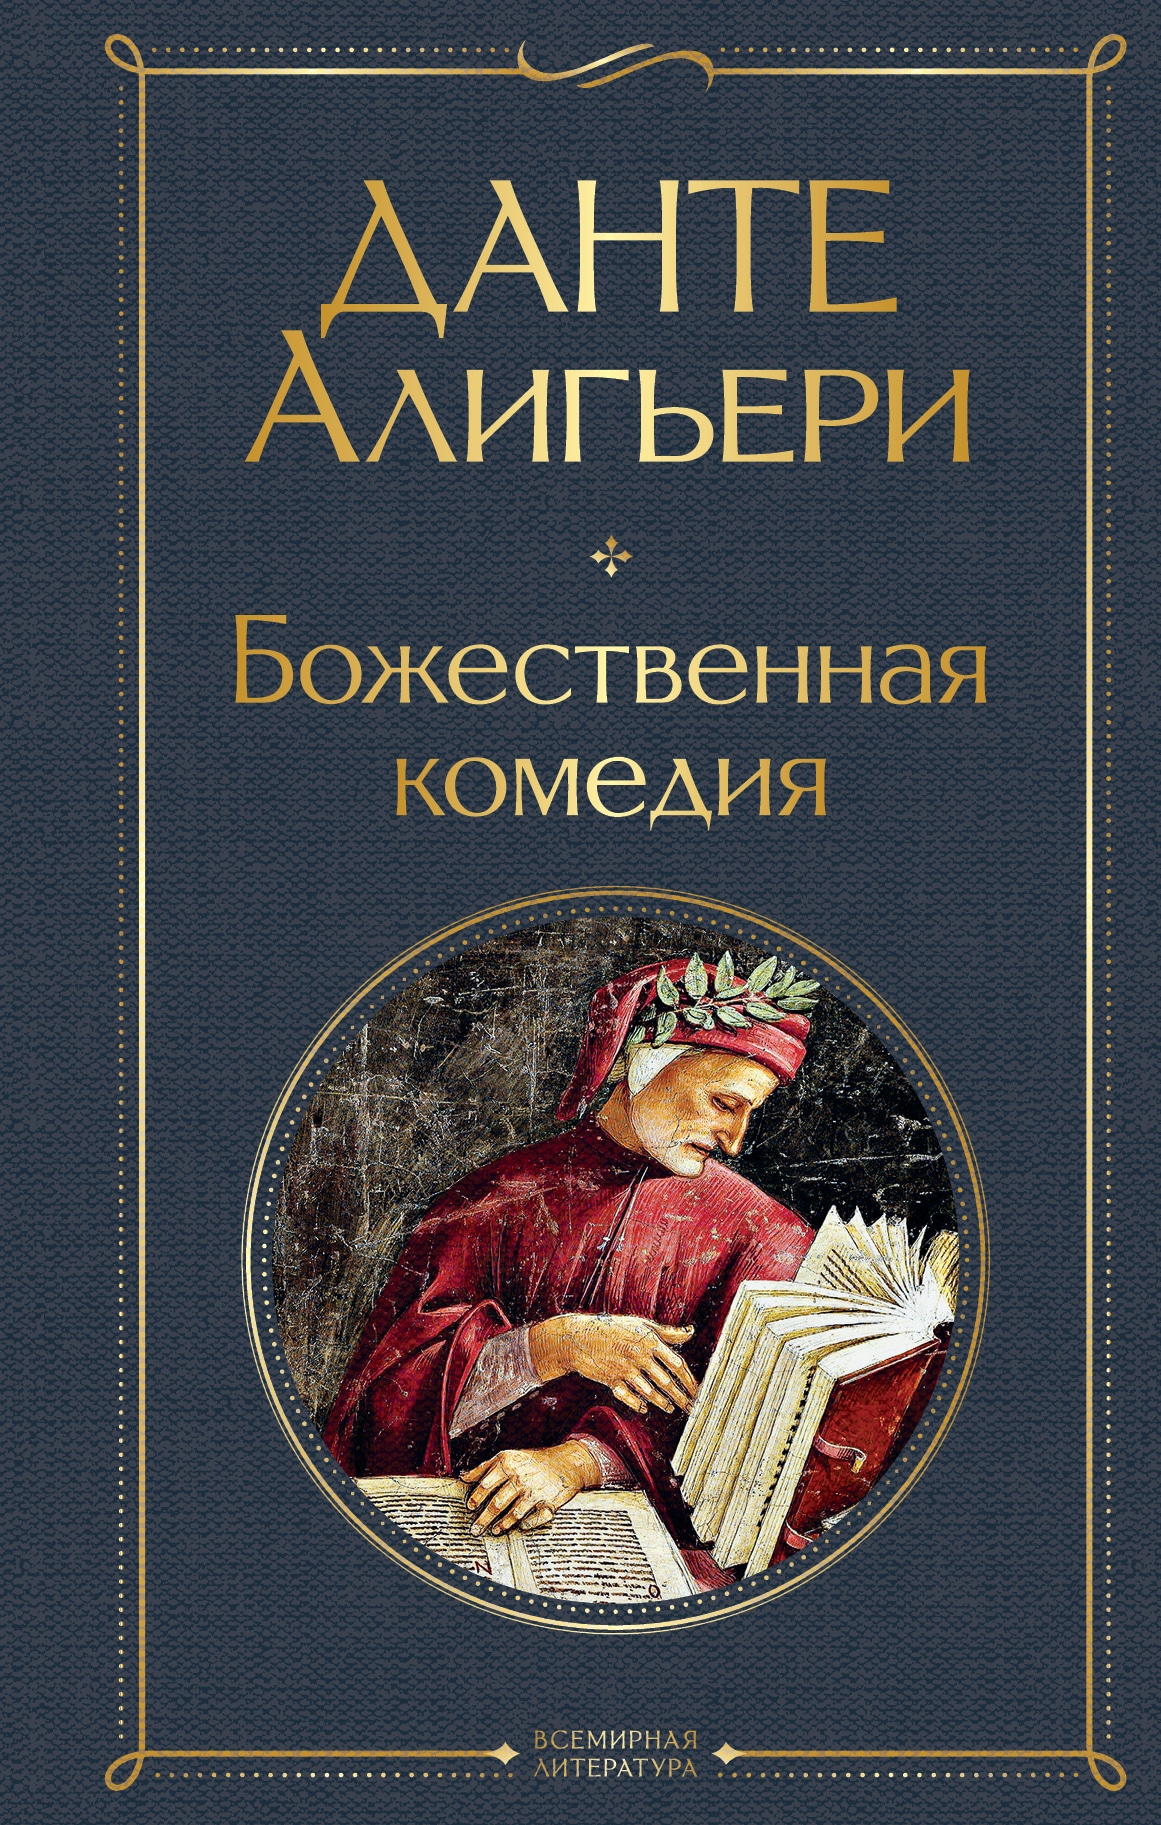 Book “Божественная комедия” by Данте Алигьери — May 20, 2021